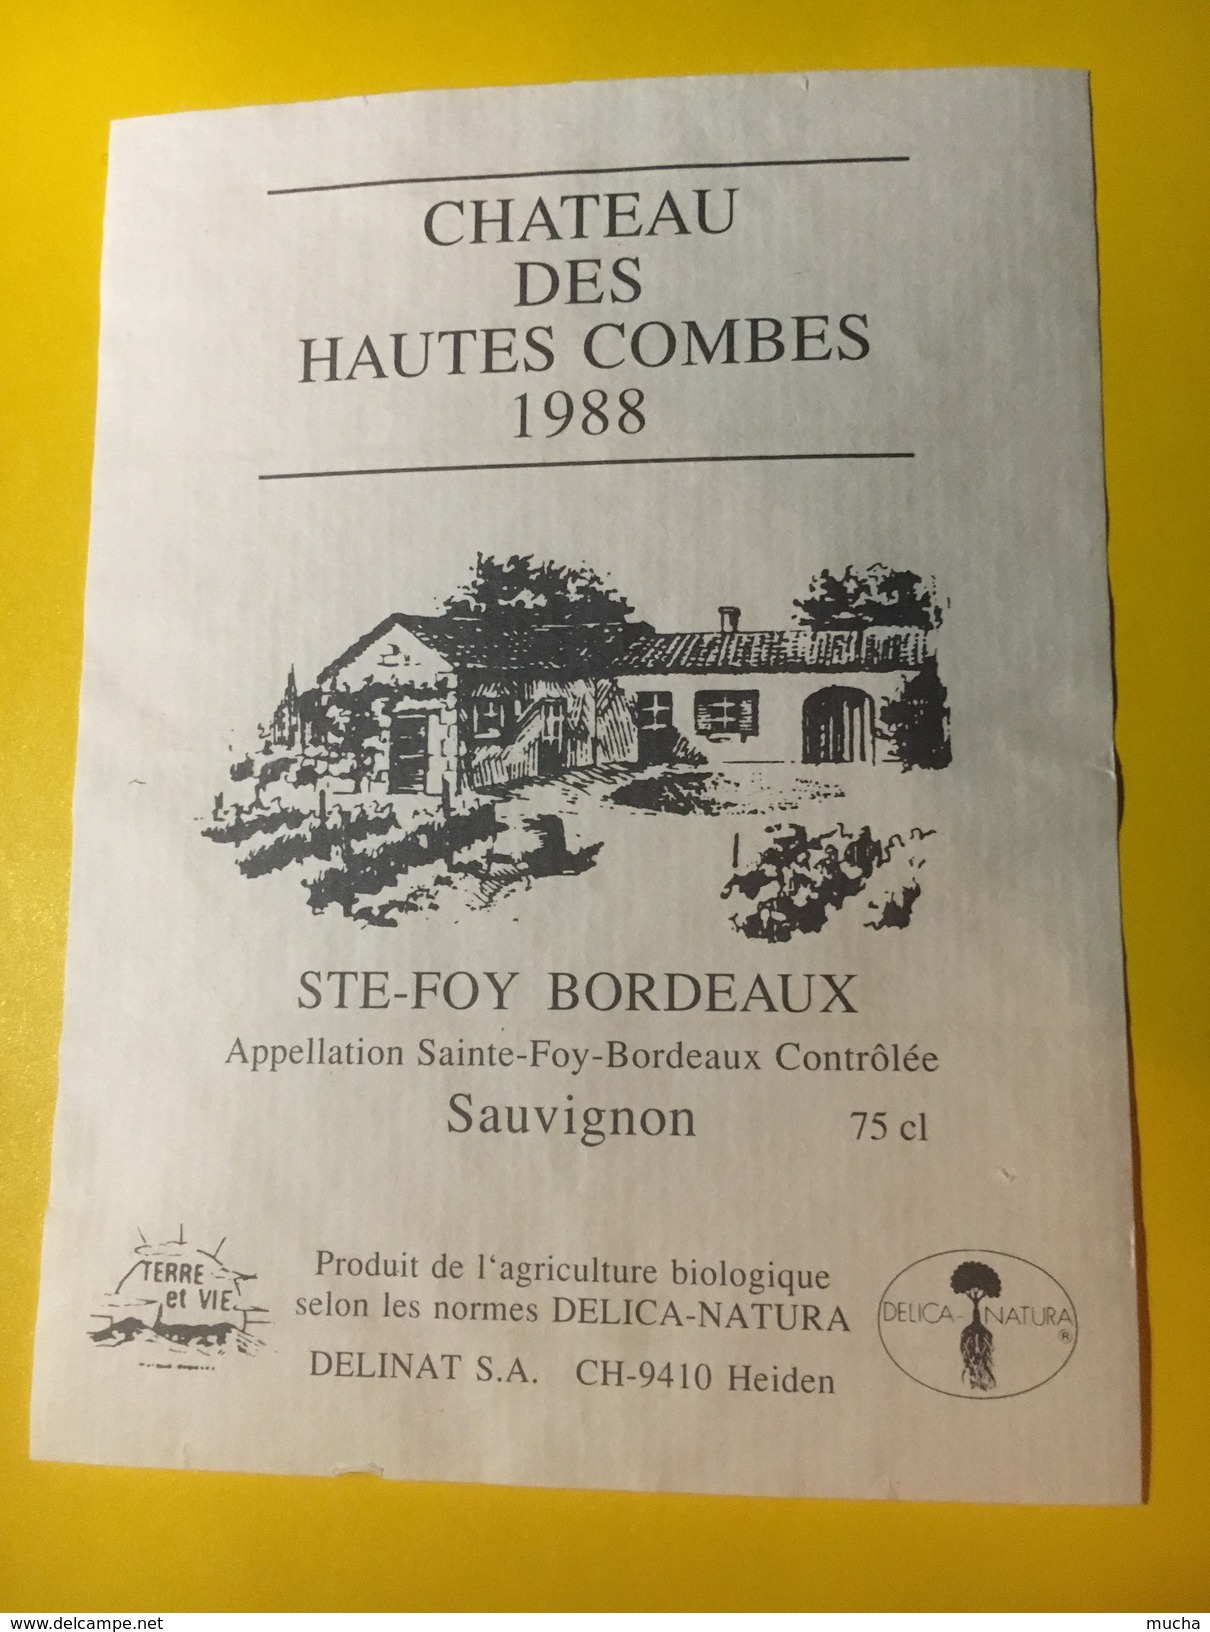 6410 - Château Des Hautes Combes 1988 Ste-Foy Sauvignon - Bordeaux